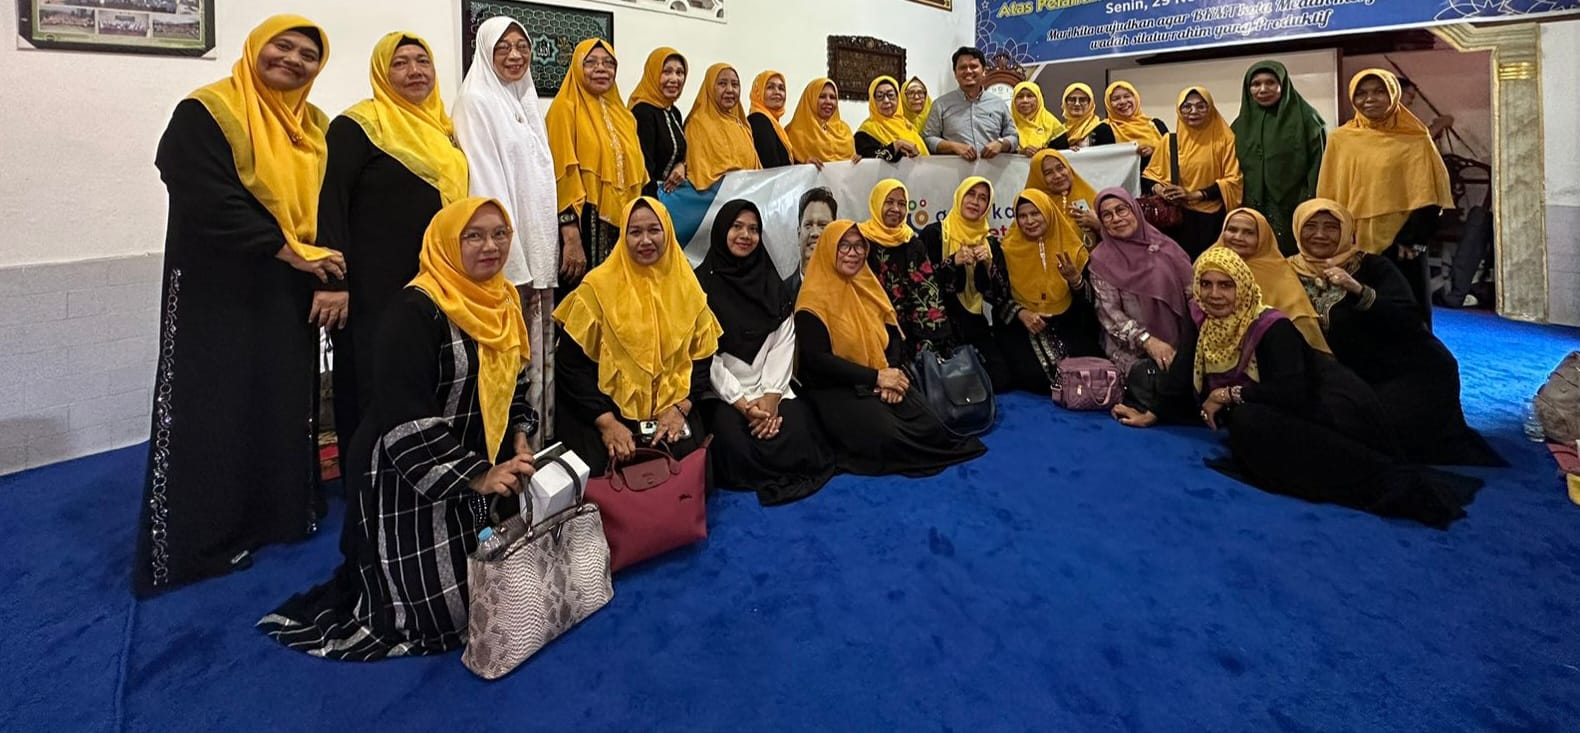 Berita Sore/Ist Prof Ridha Dharmajaya foto bersama dengan para pengurus BKMT Medan Kota di Jl. Pencak Kecamatan Medan Kota, Senin (24/7).